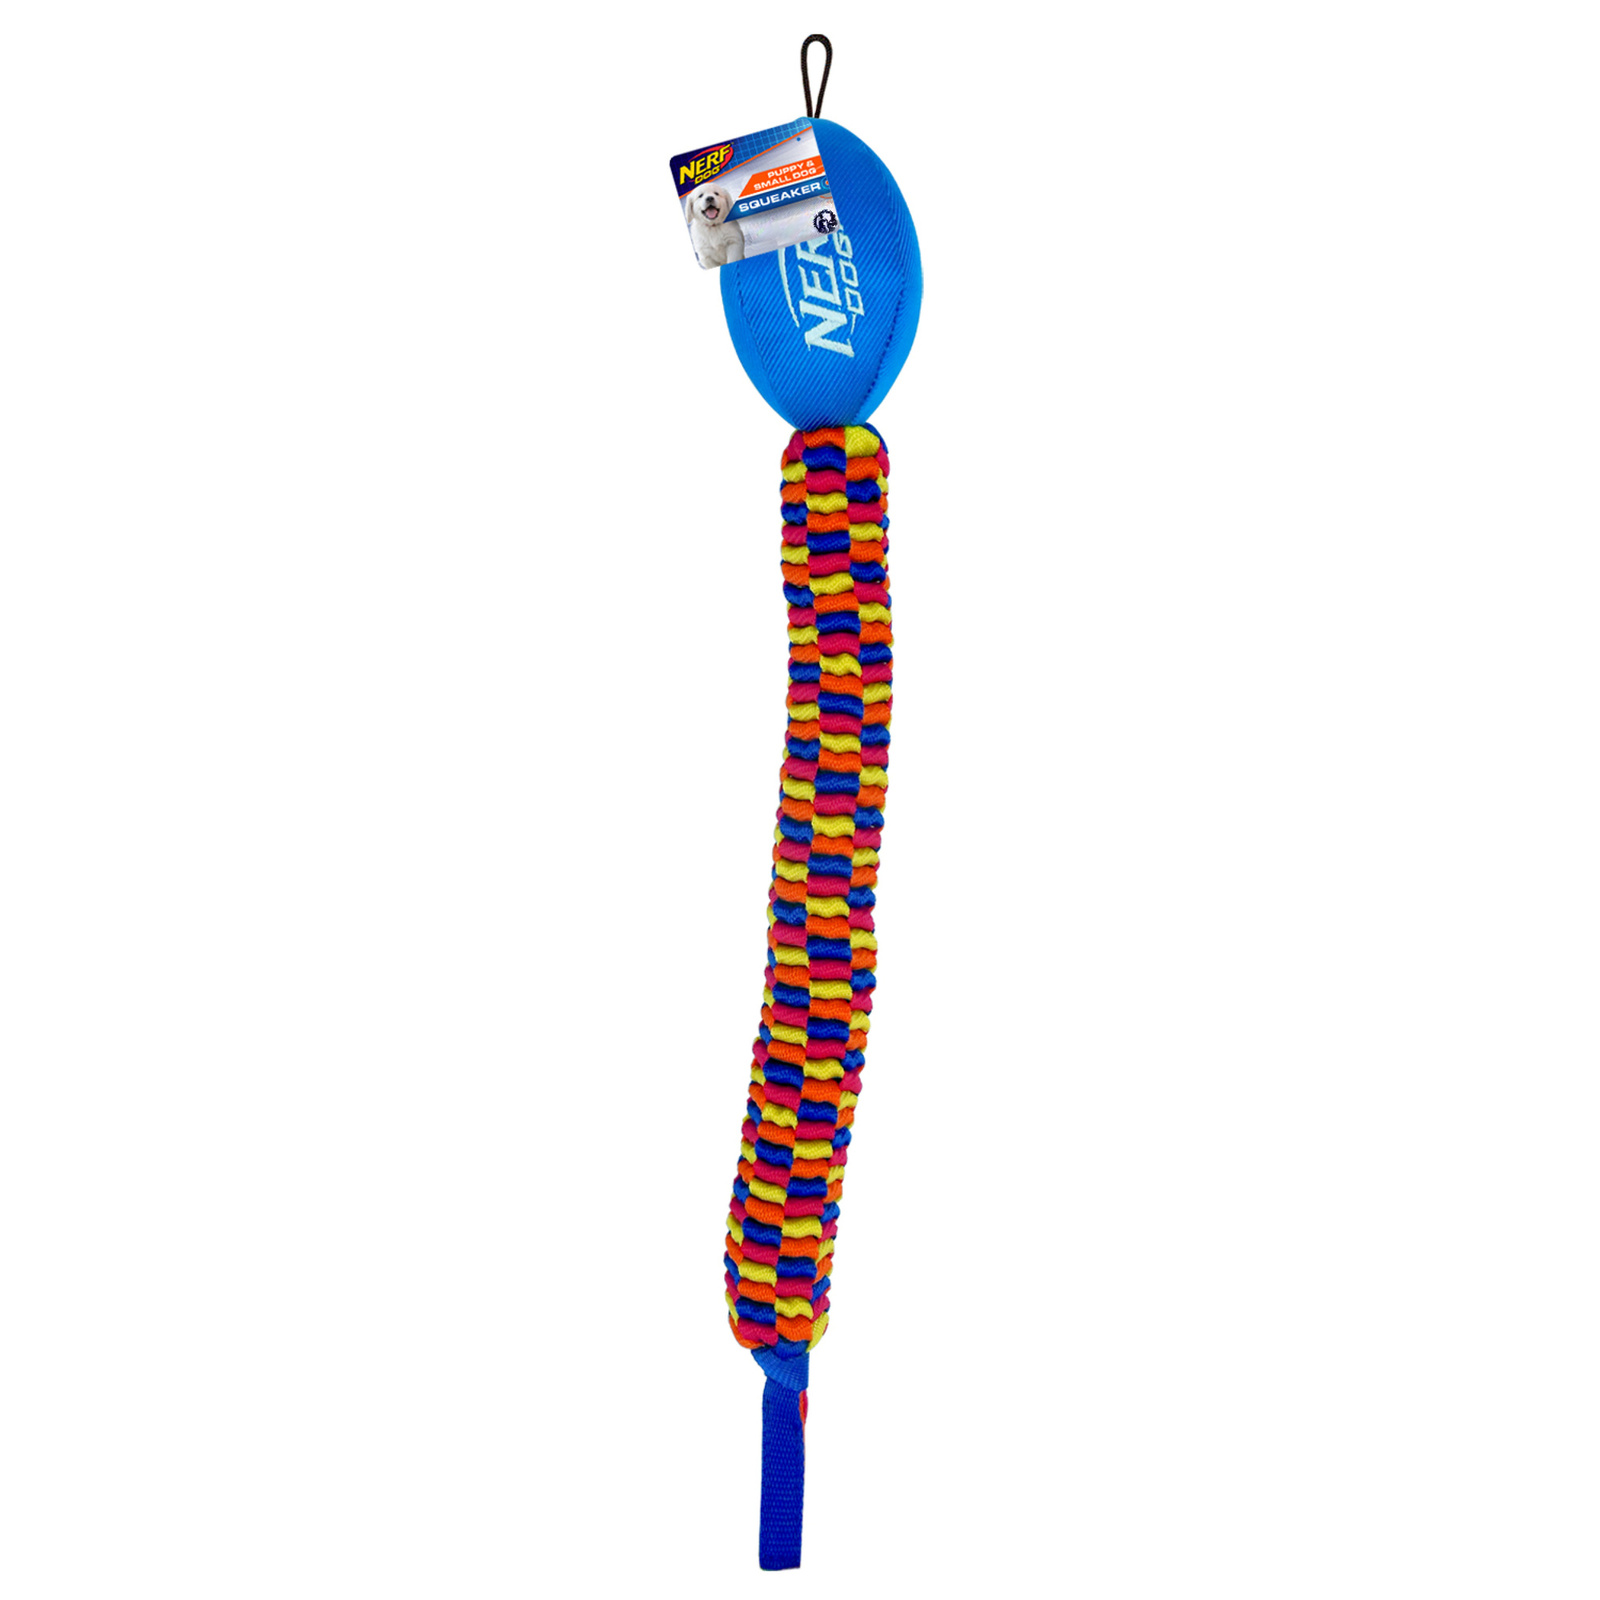 Nerf Nerf мяч для регби с плетеным шлейфом, 48 см, (синий/оранжевый/зеленый/красный) (272 г) kong джумблер игрушка регби для собак 18 см